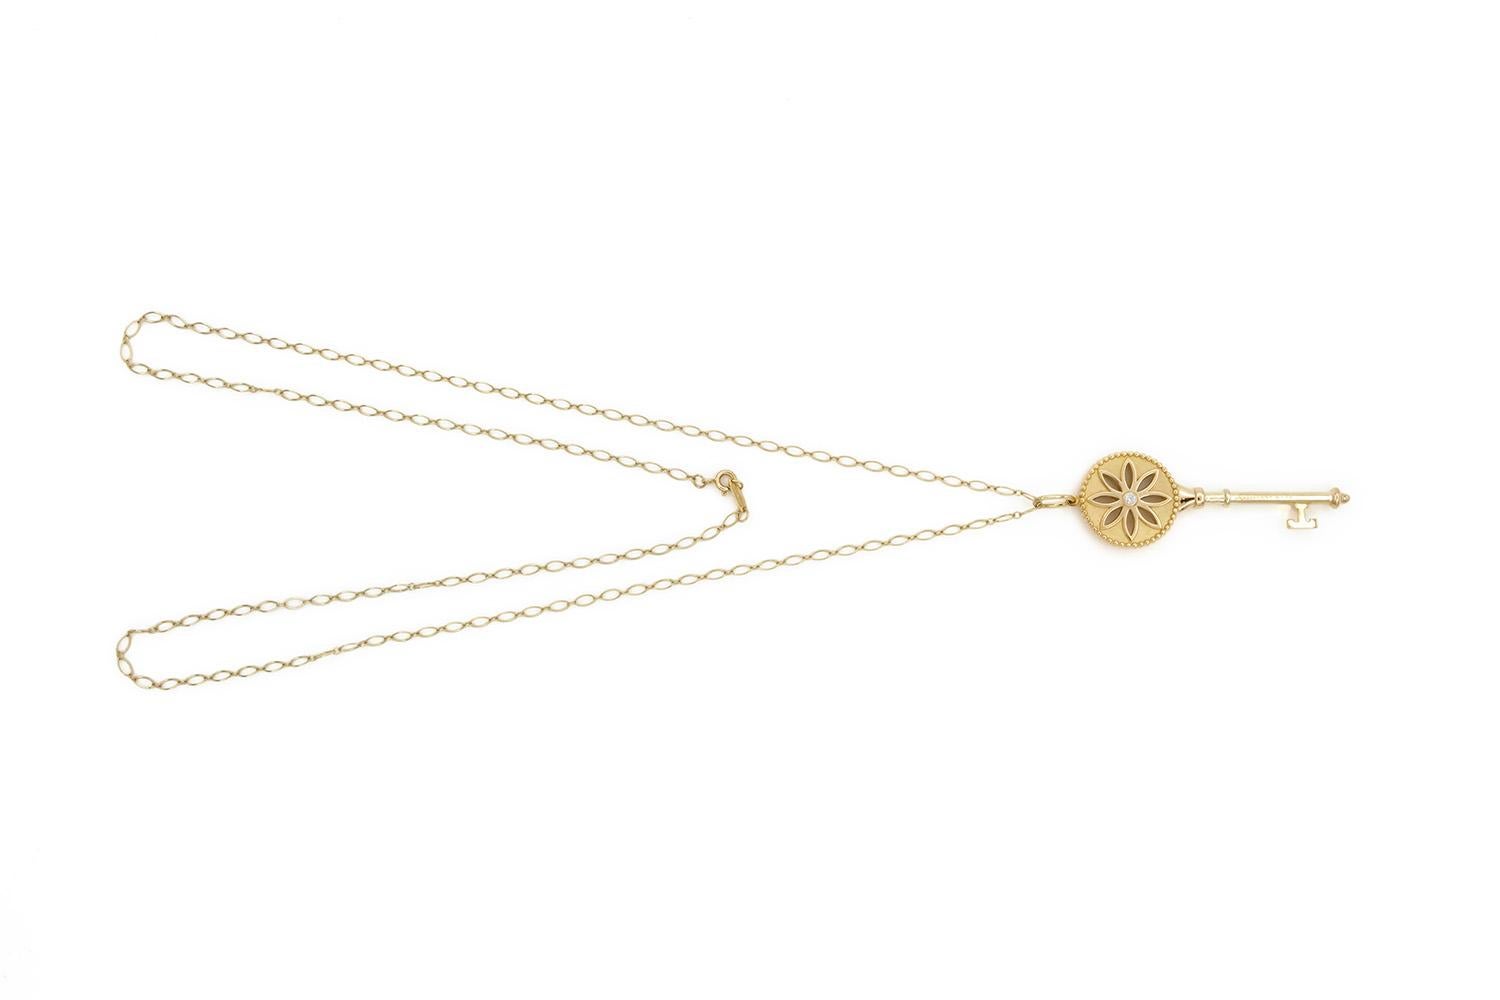 Contemporary Tiffany & Co. 18k Yellow Gold & Diamond Daisy Key Pendant Necklace Large 2.5